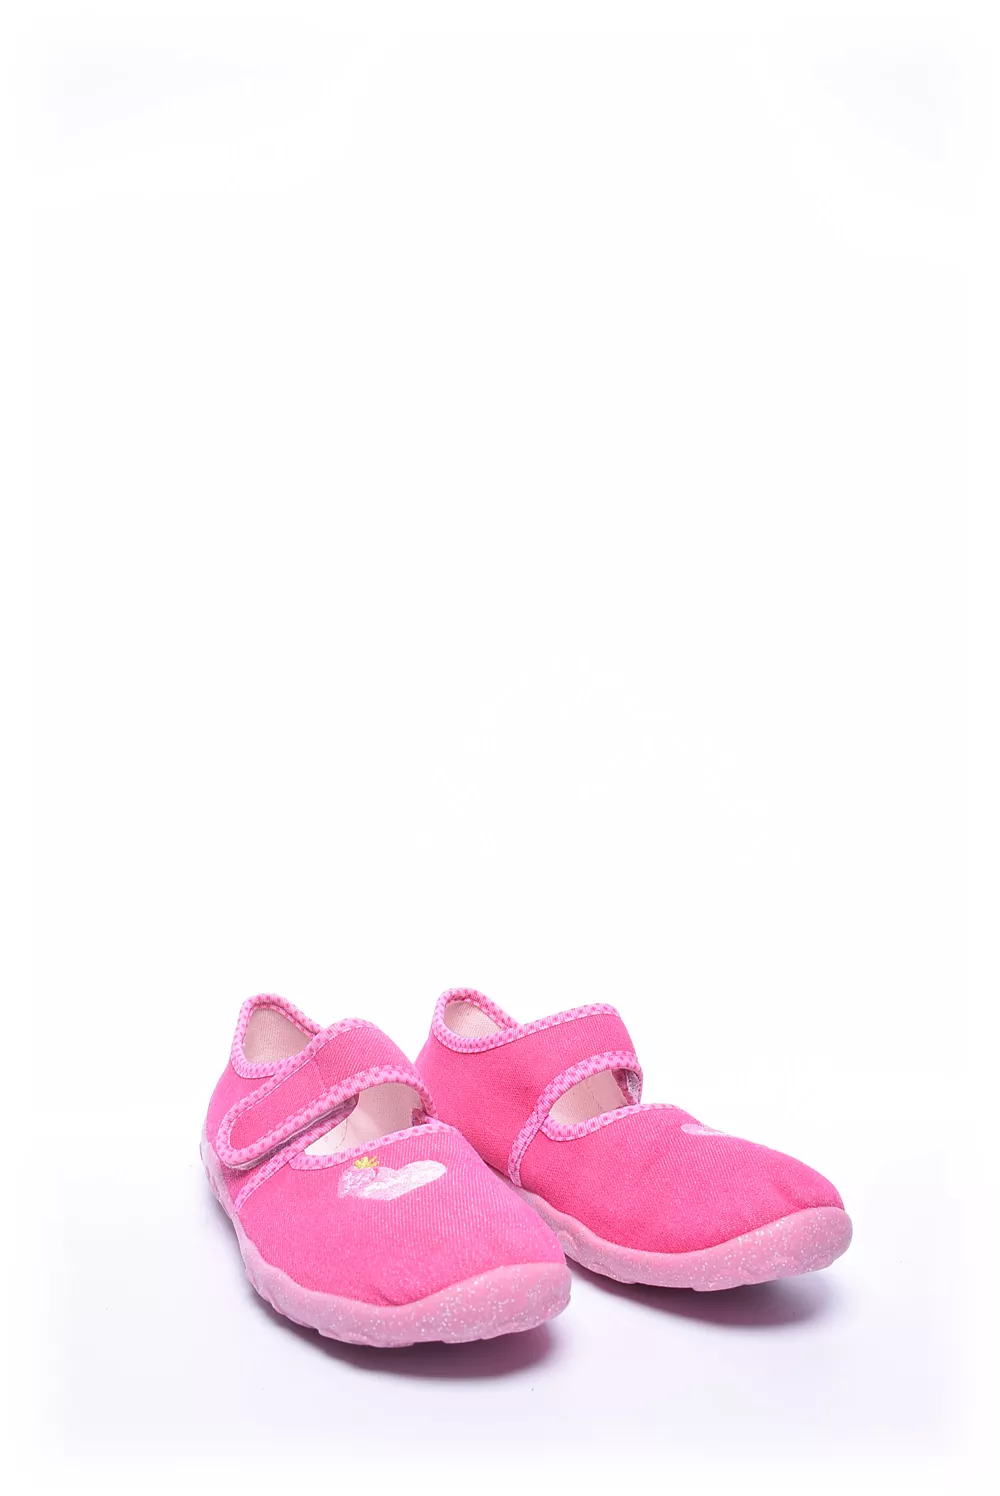 Pantofi fete [2]